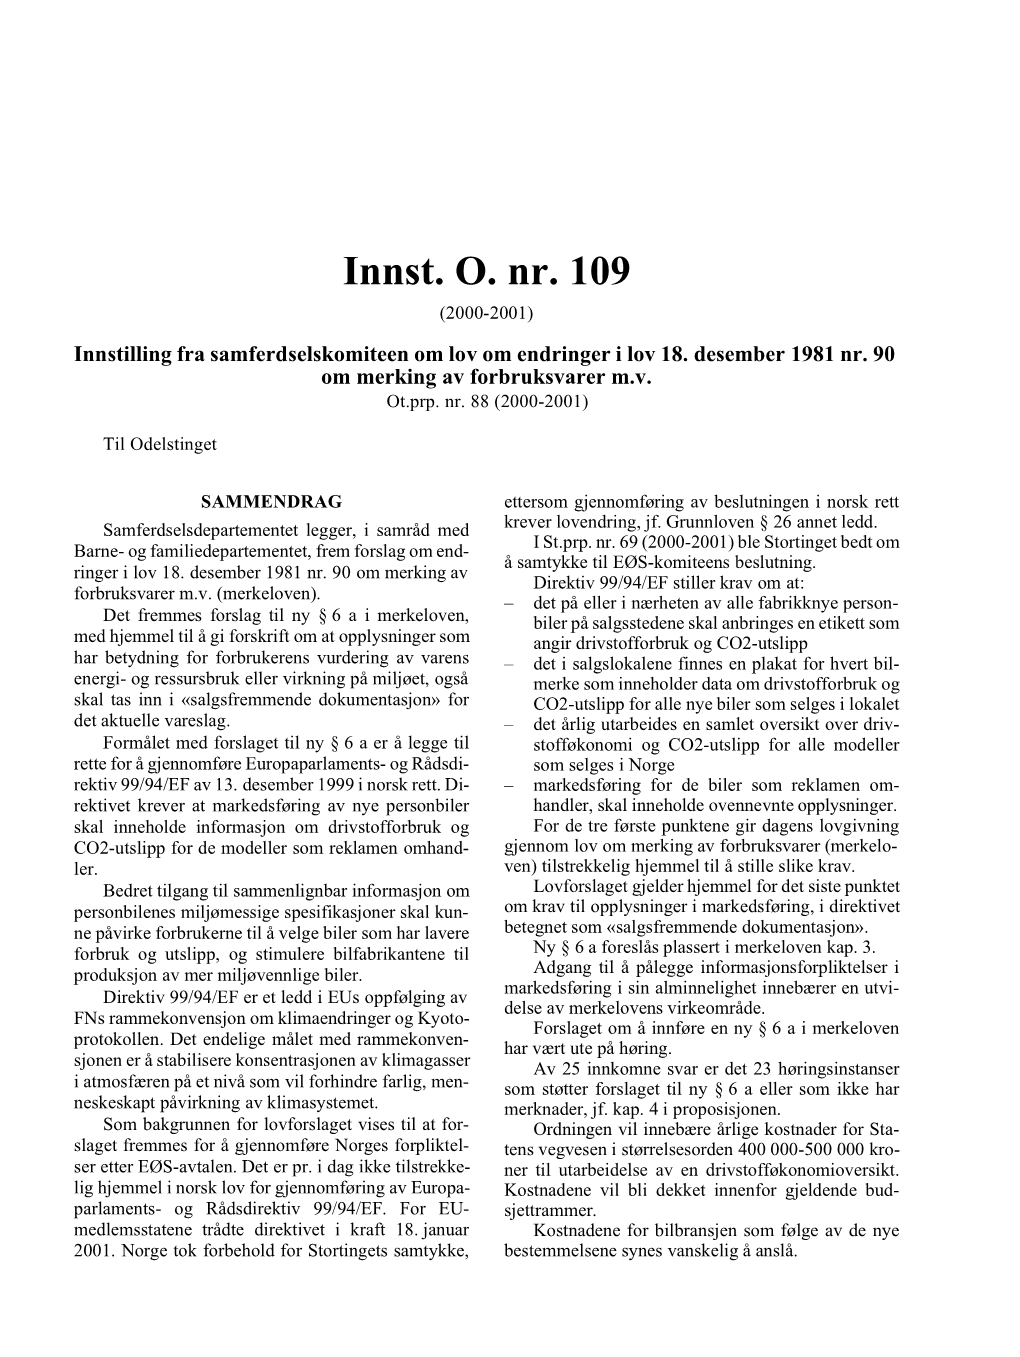 Innst. O. Nr. 109 (2000-2001) Innstilling Fra Samferdselskomiteen Om Lov Om Endringer I Lov 18